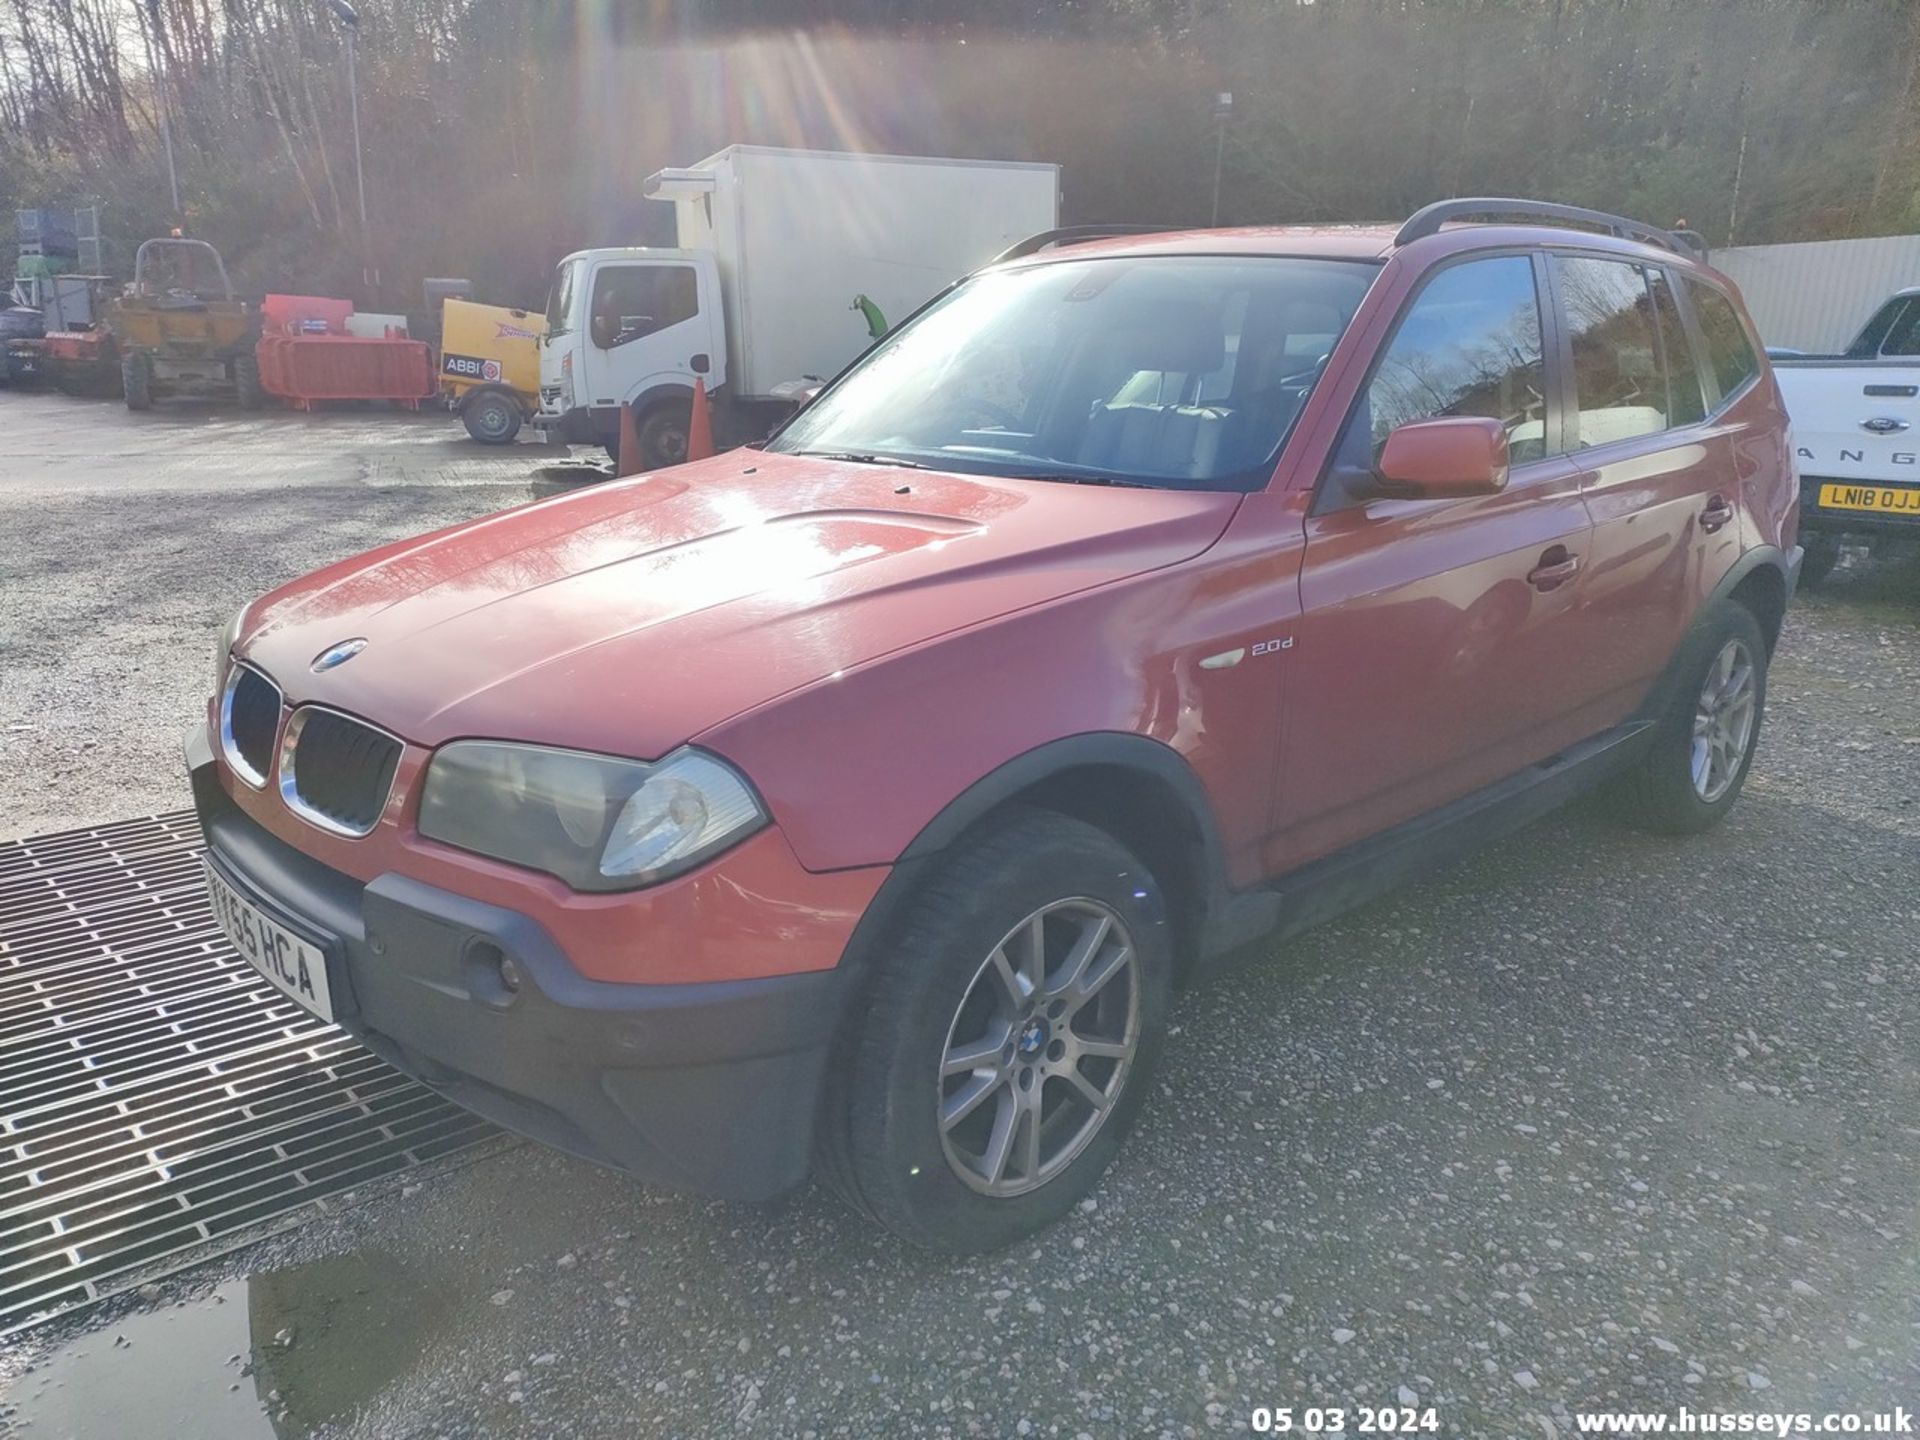 05/55 BMW X3 D SE - 1995cc 5dr Estate (Red, 188k) - Image 12 of 51